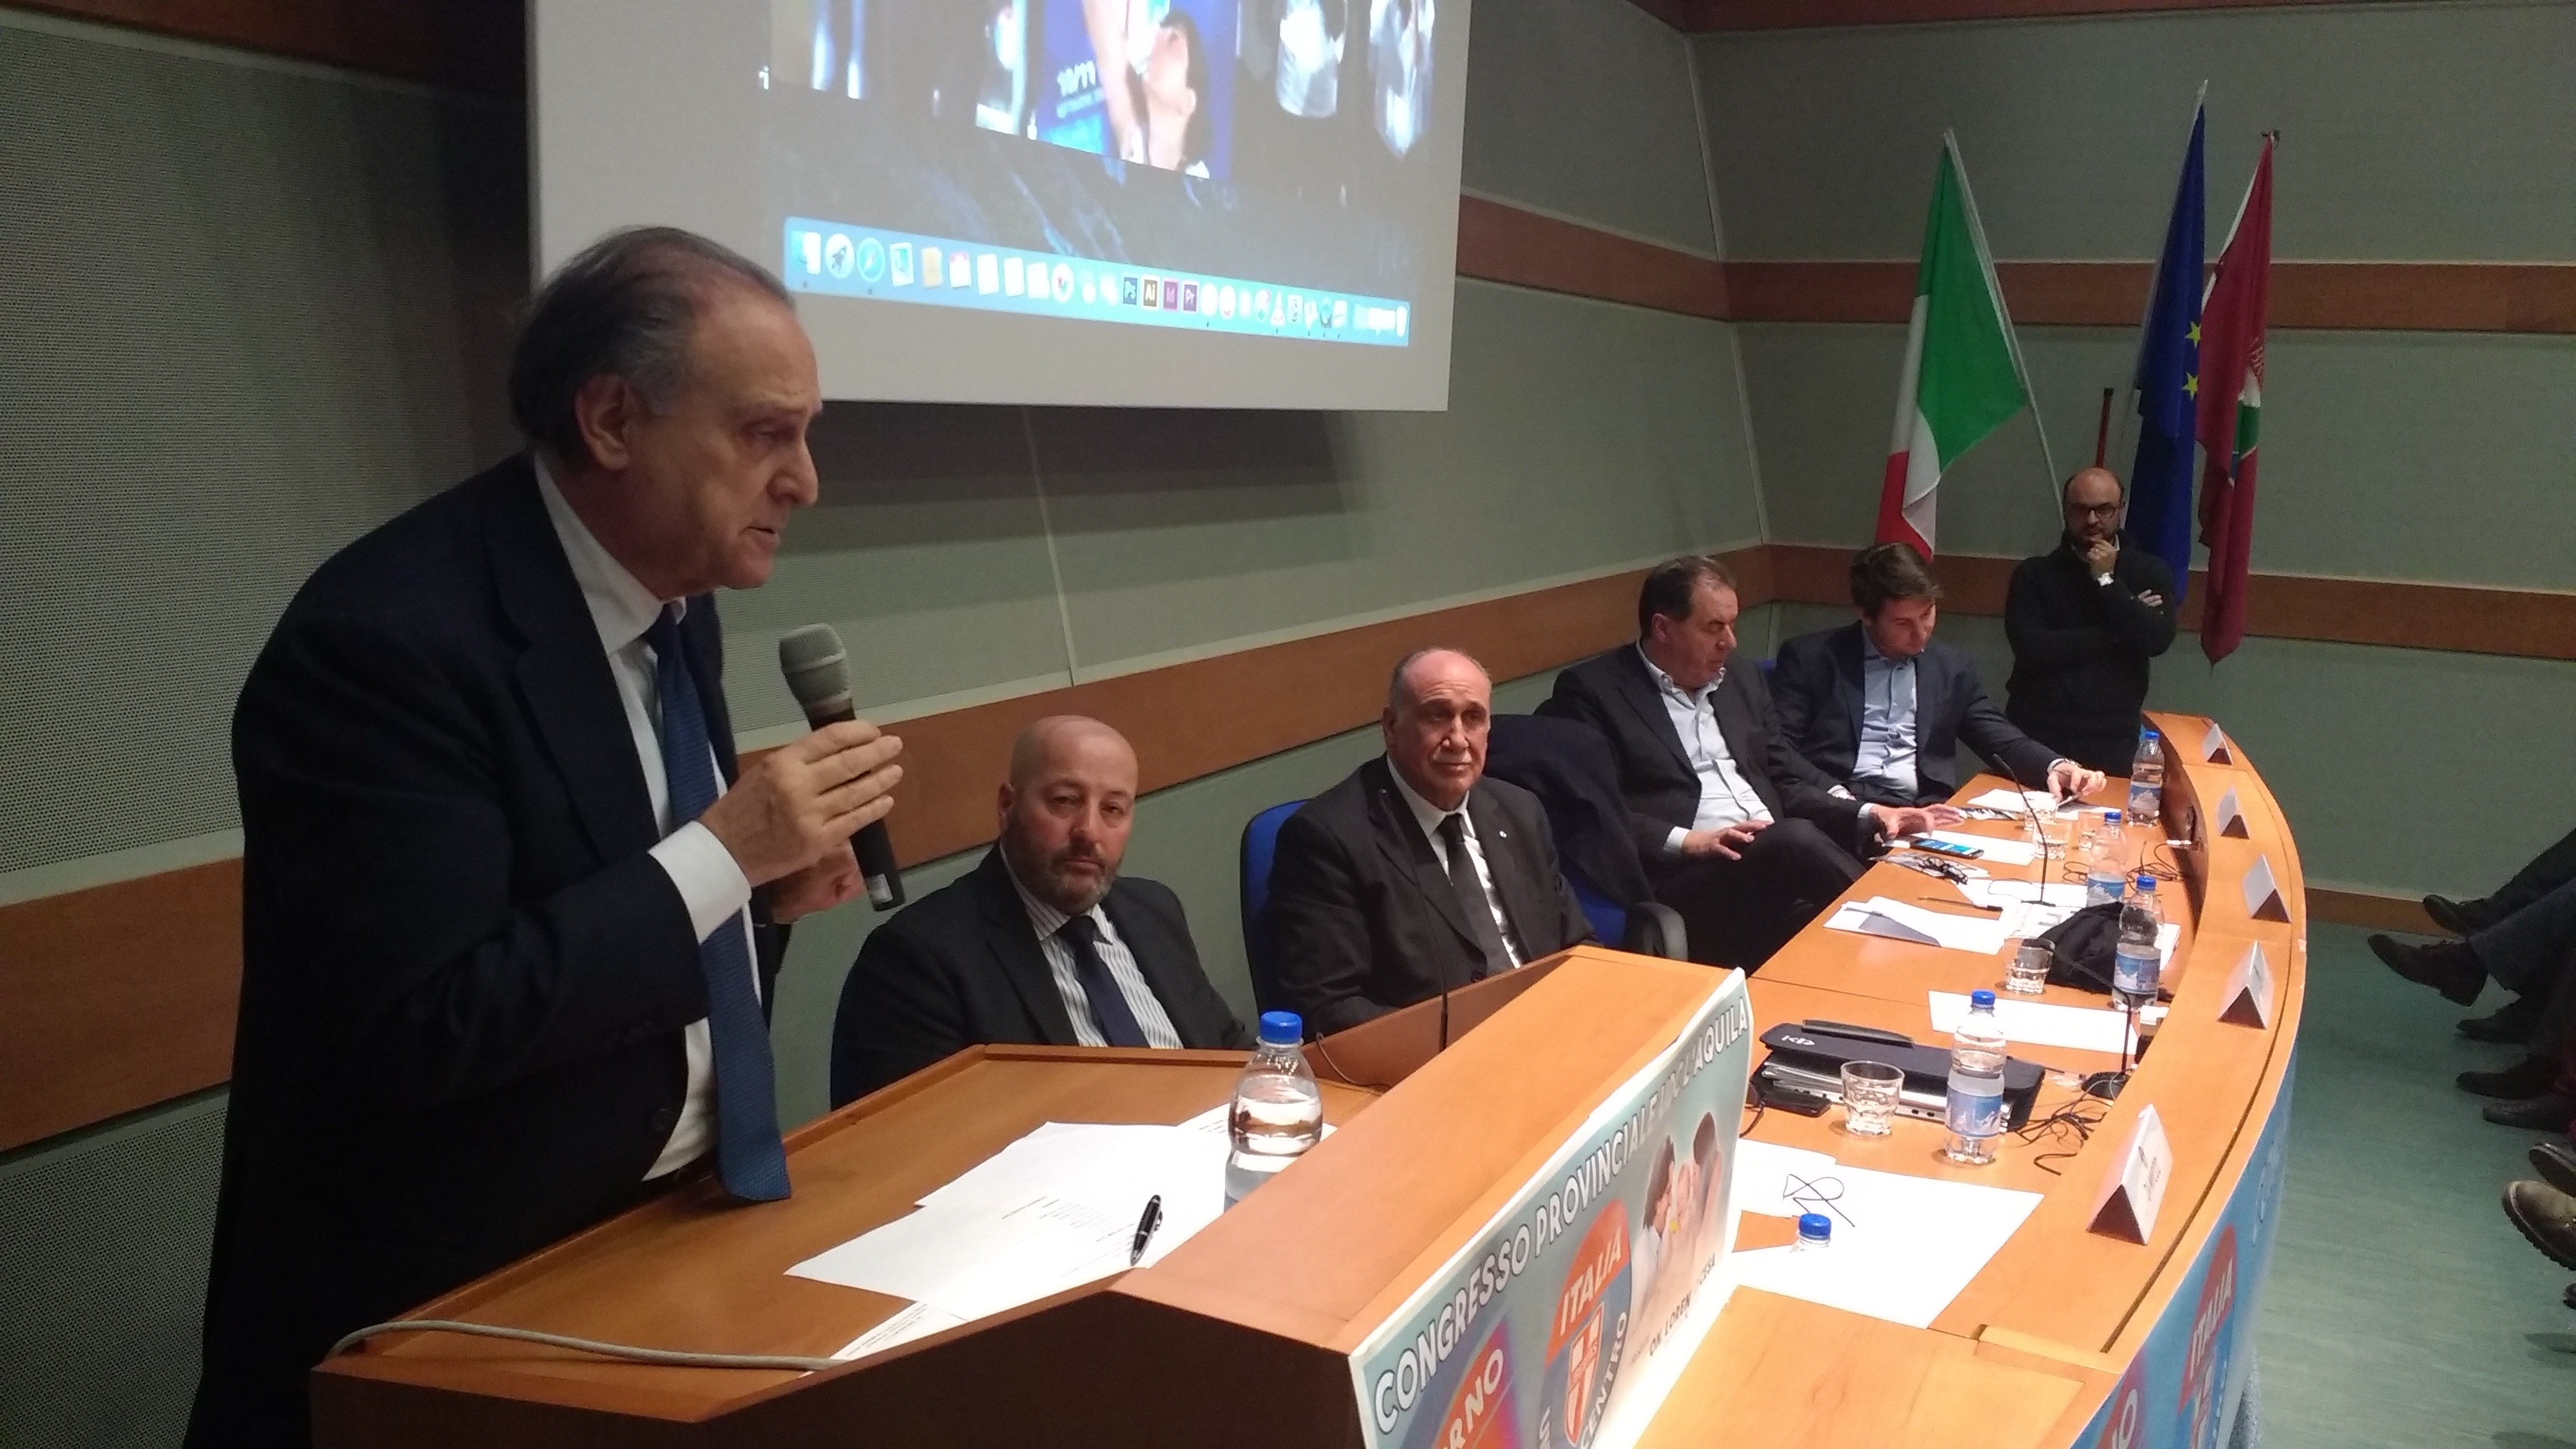 L’Udc contro De Angelis: "Politico errante. Ostaggio di Piccone, Gerosolimo e Di Stefano"